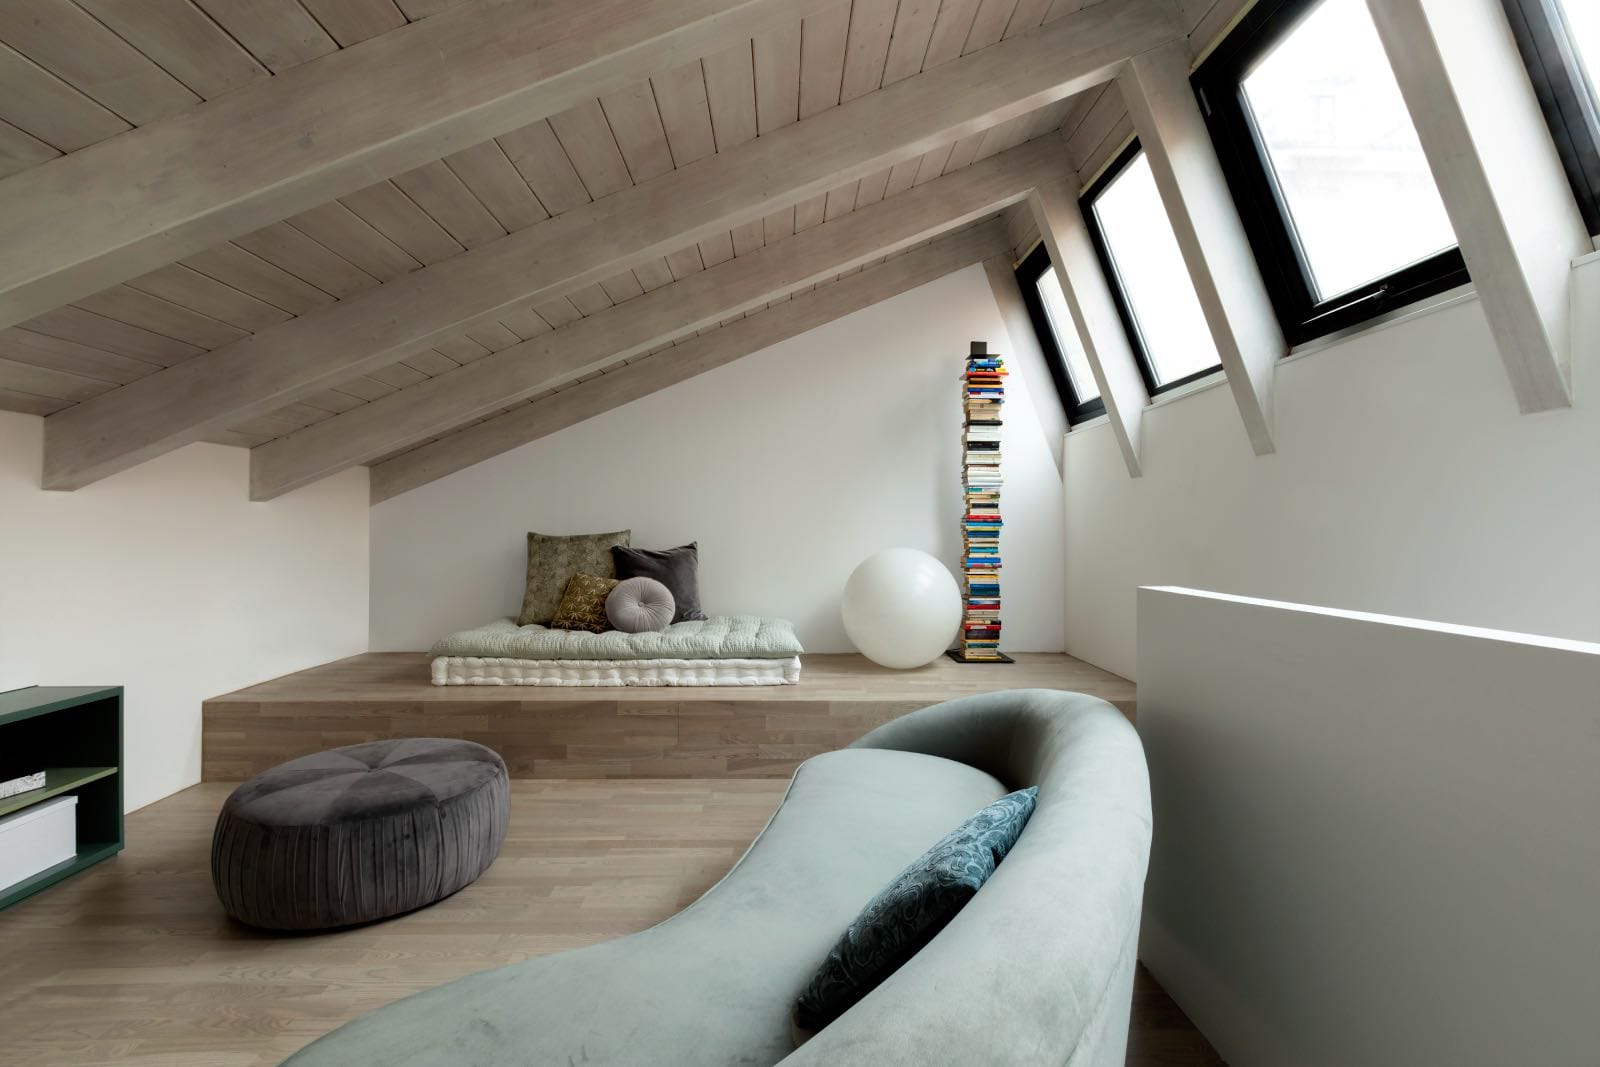 loft de estilo industrial moderno con altillo y sala de estar